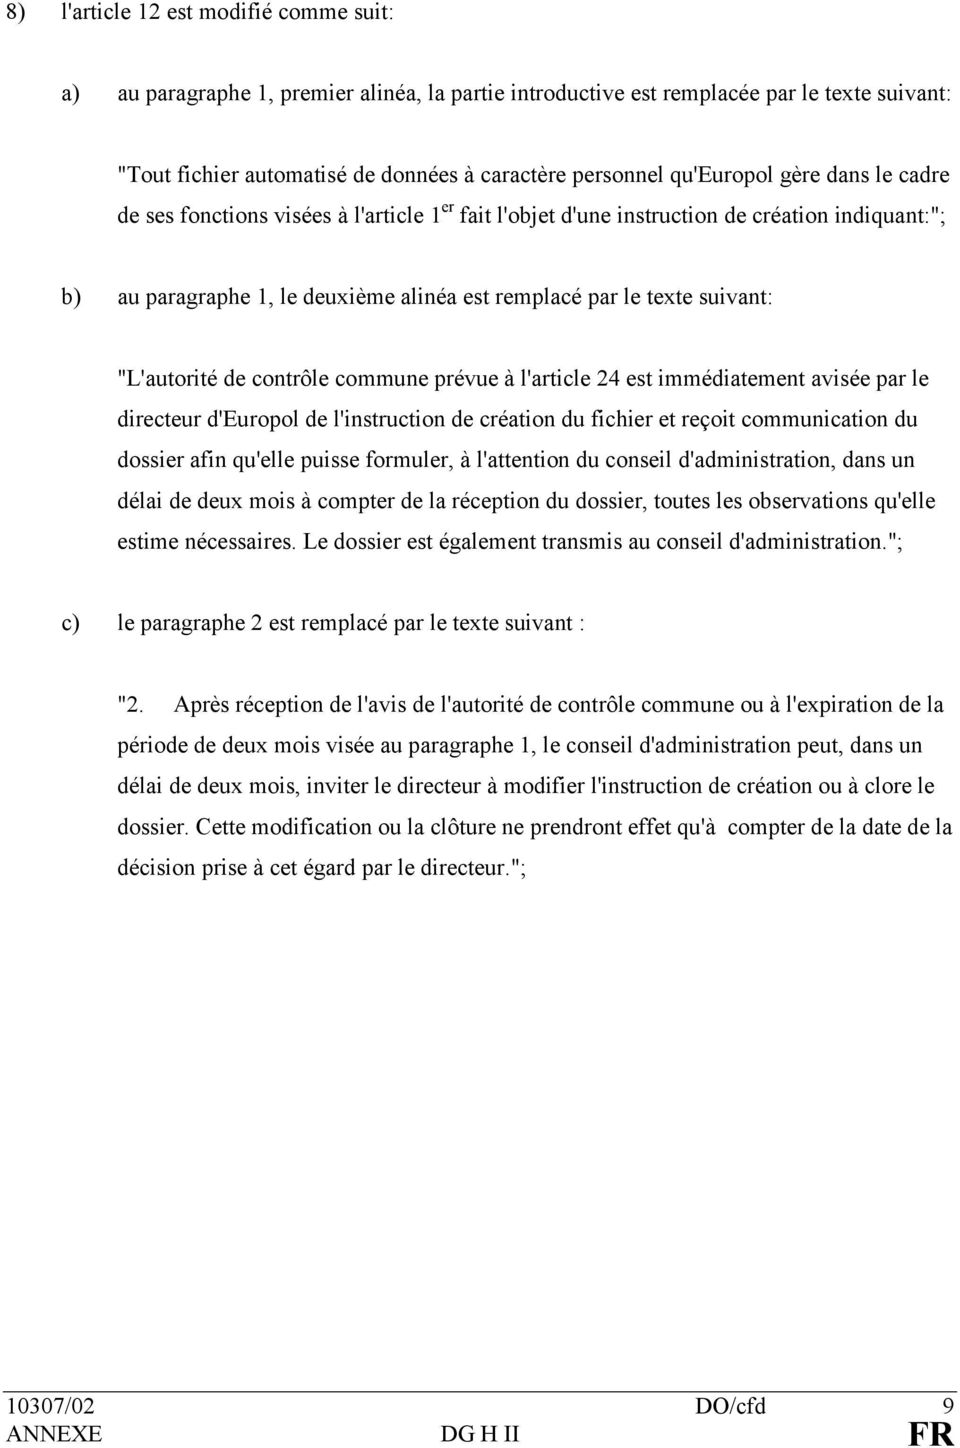 suivant: "L'autorité de contrôle commune prévue à l'article 24 est immédiatement avisée par le directeur d'europol de l'instruction de création du fichier et reçoit communication du dossier afin